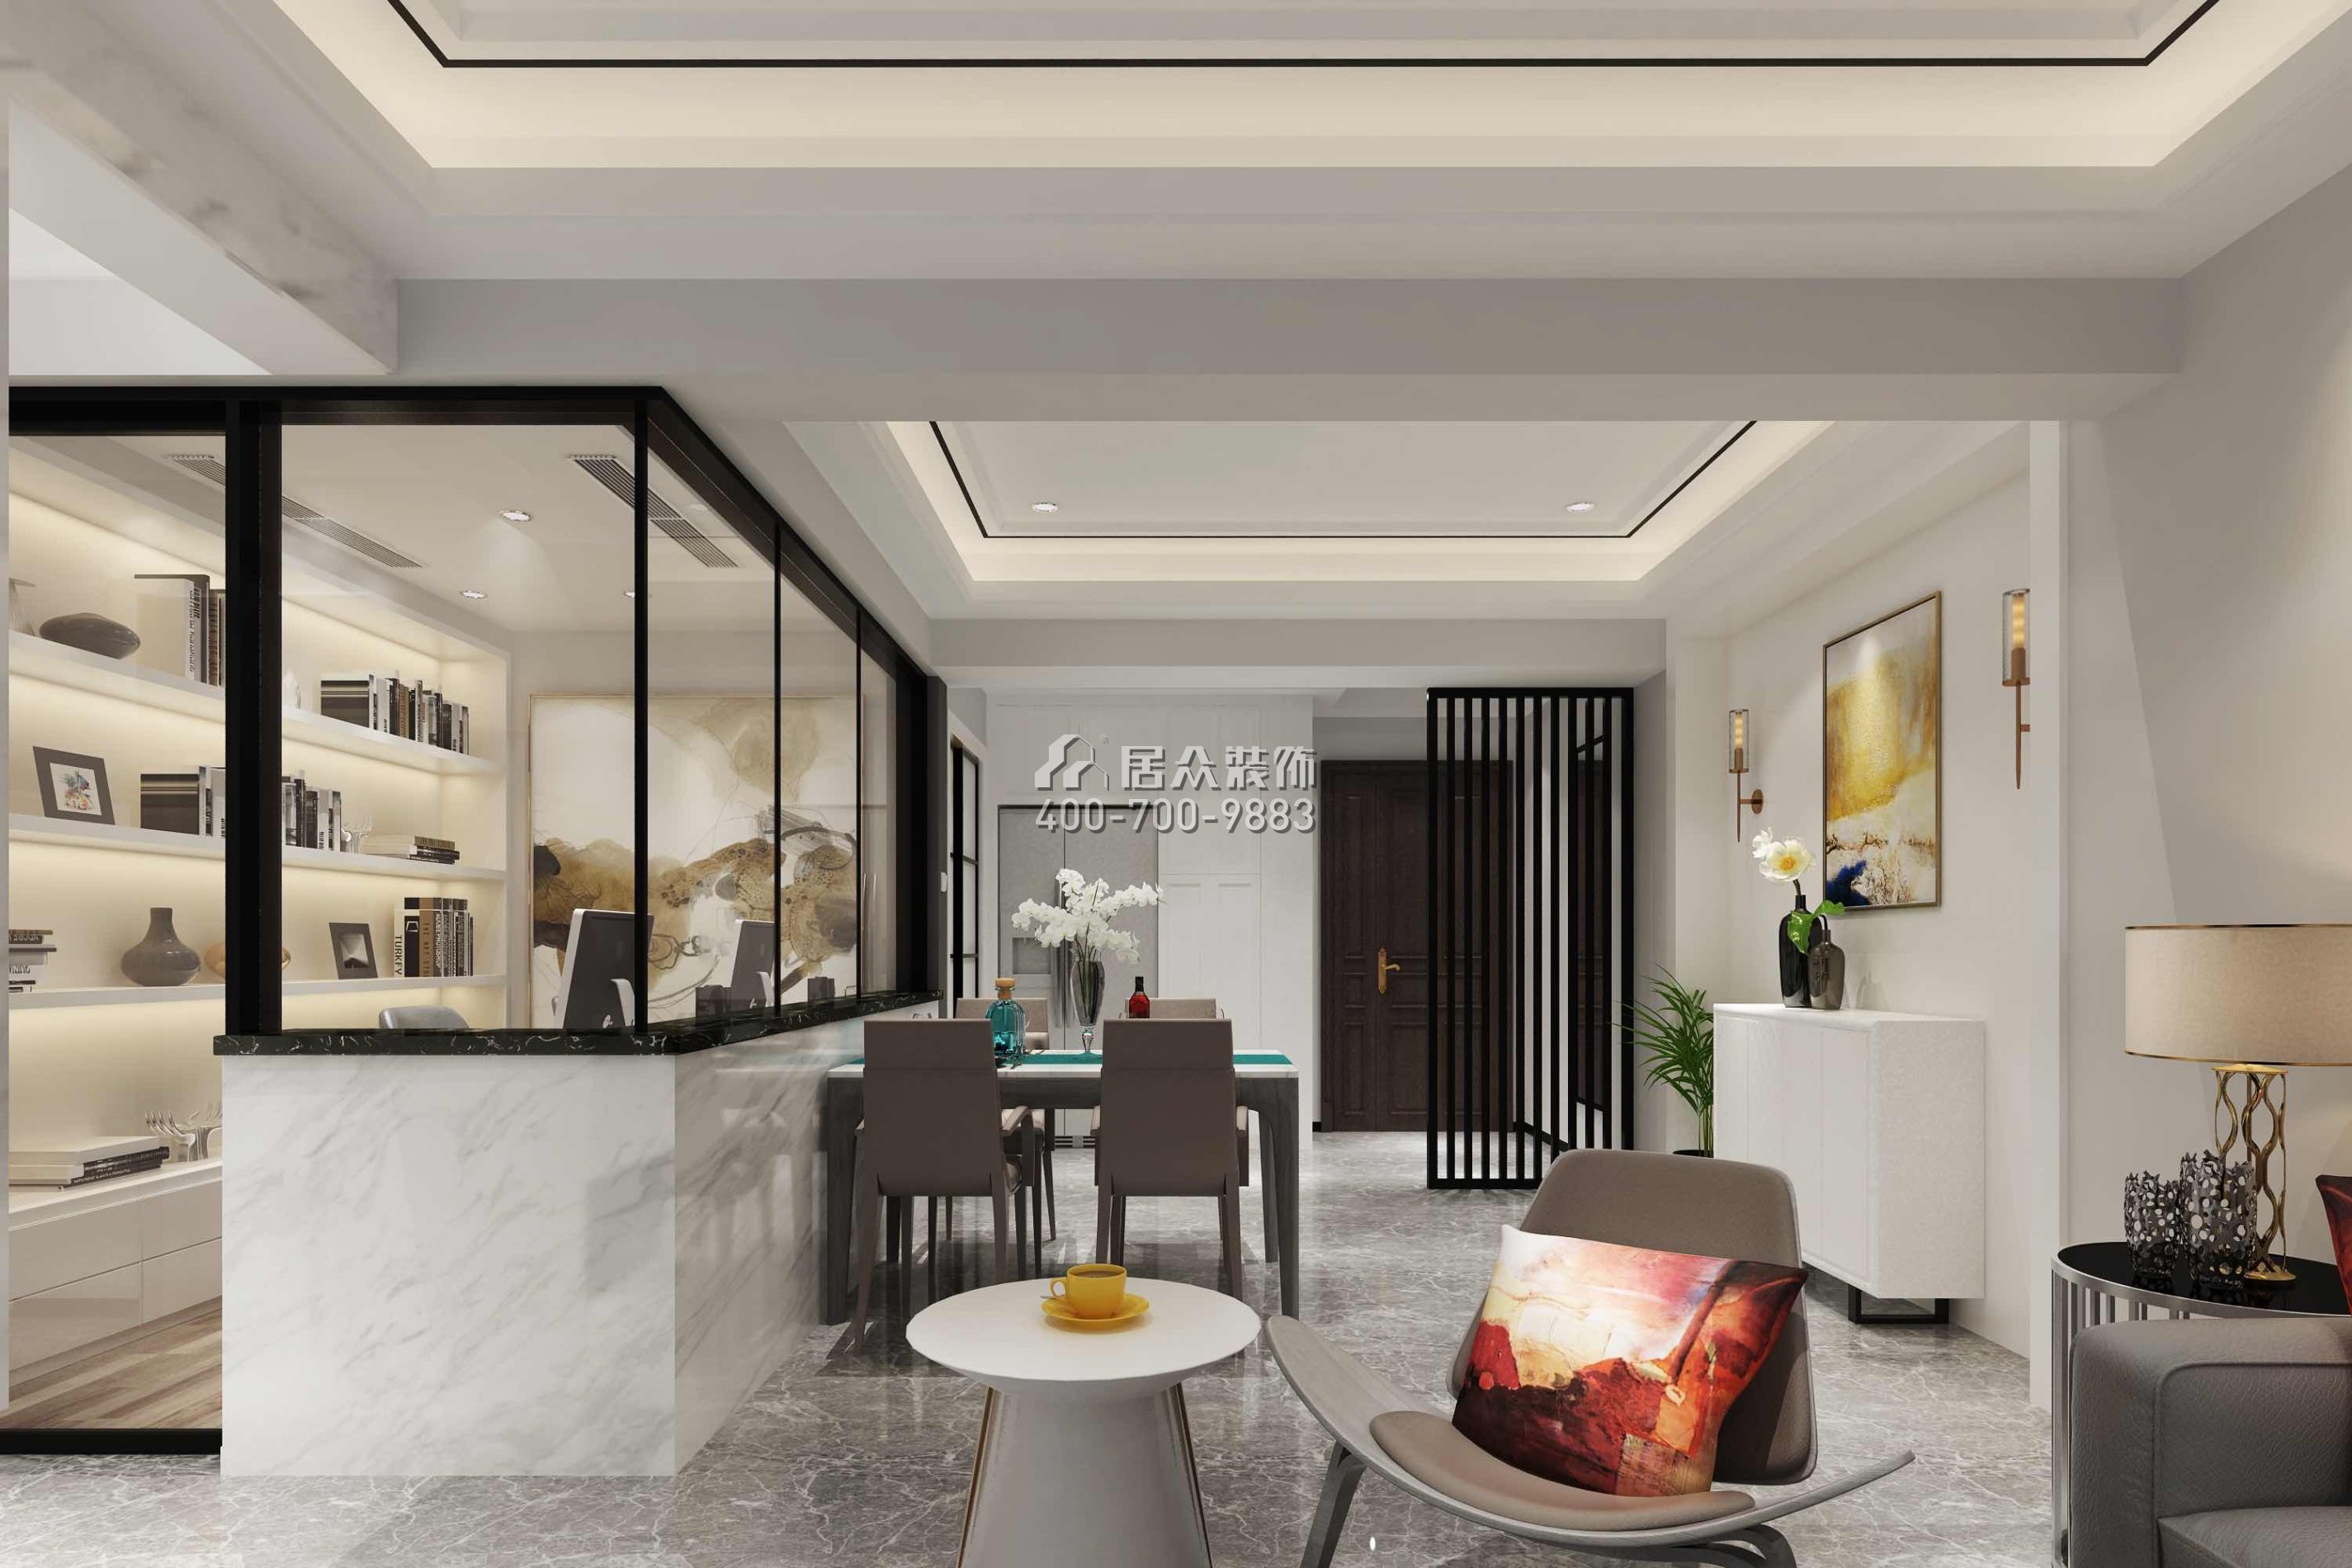 博林天瑞89平方米現代簡約風格平層戶型餐廳裝修效果圖